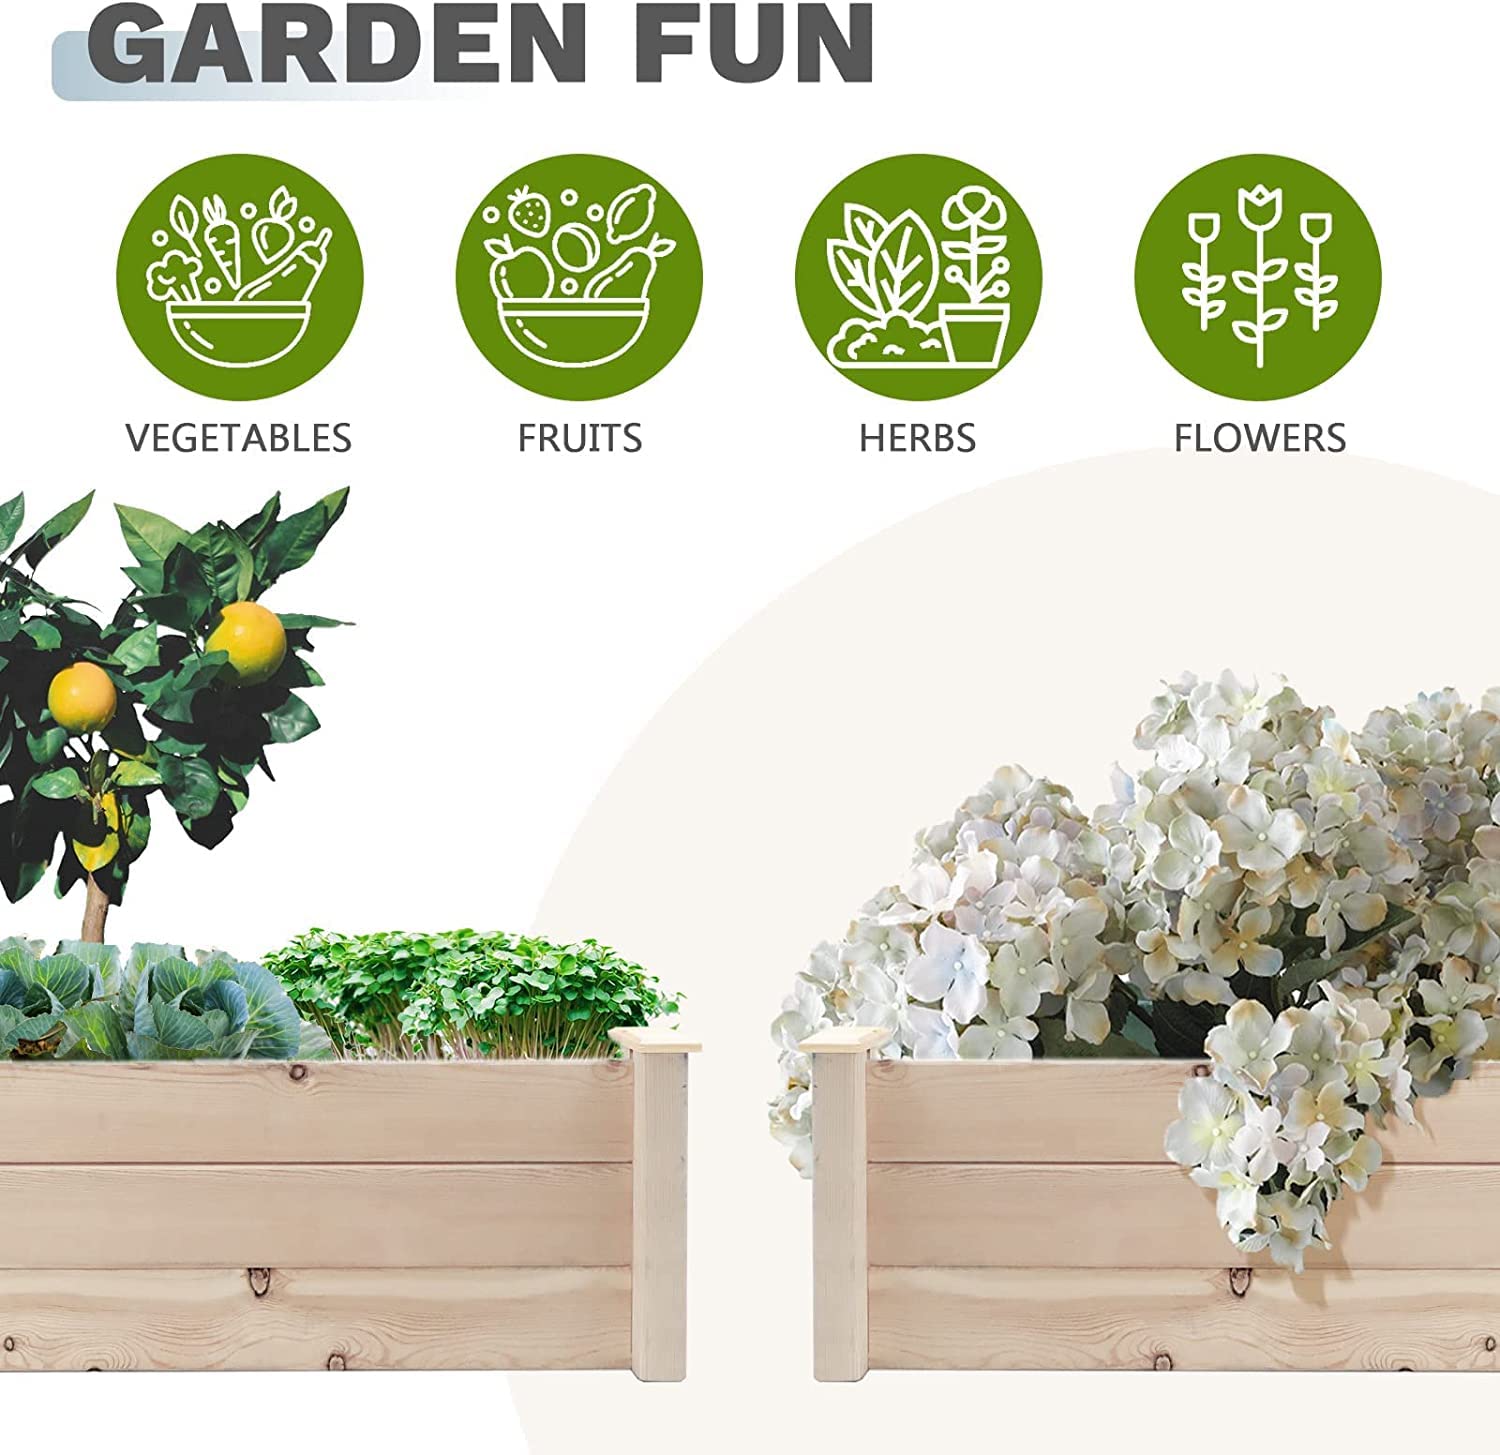 Oakmont Pure Wooden Raised Garden Bed 8ft Planter Box Kit for Vegetables Herbs, Flowers Natural